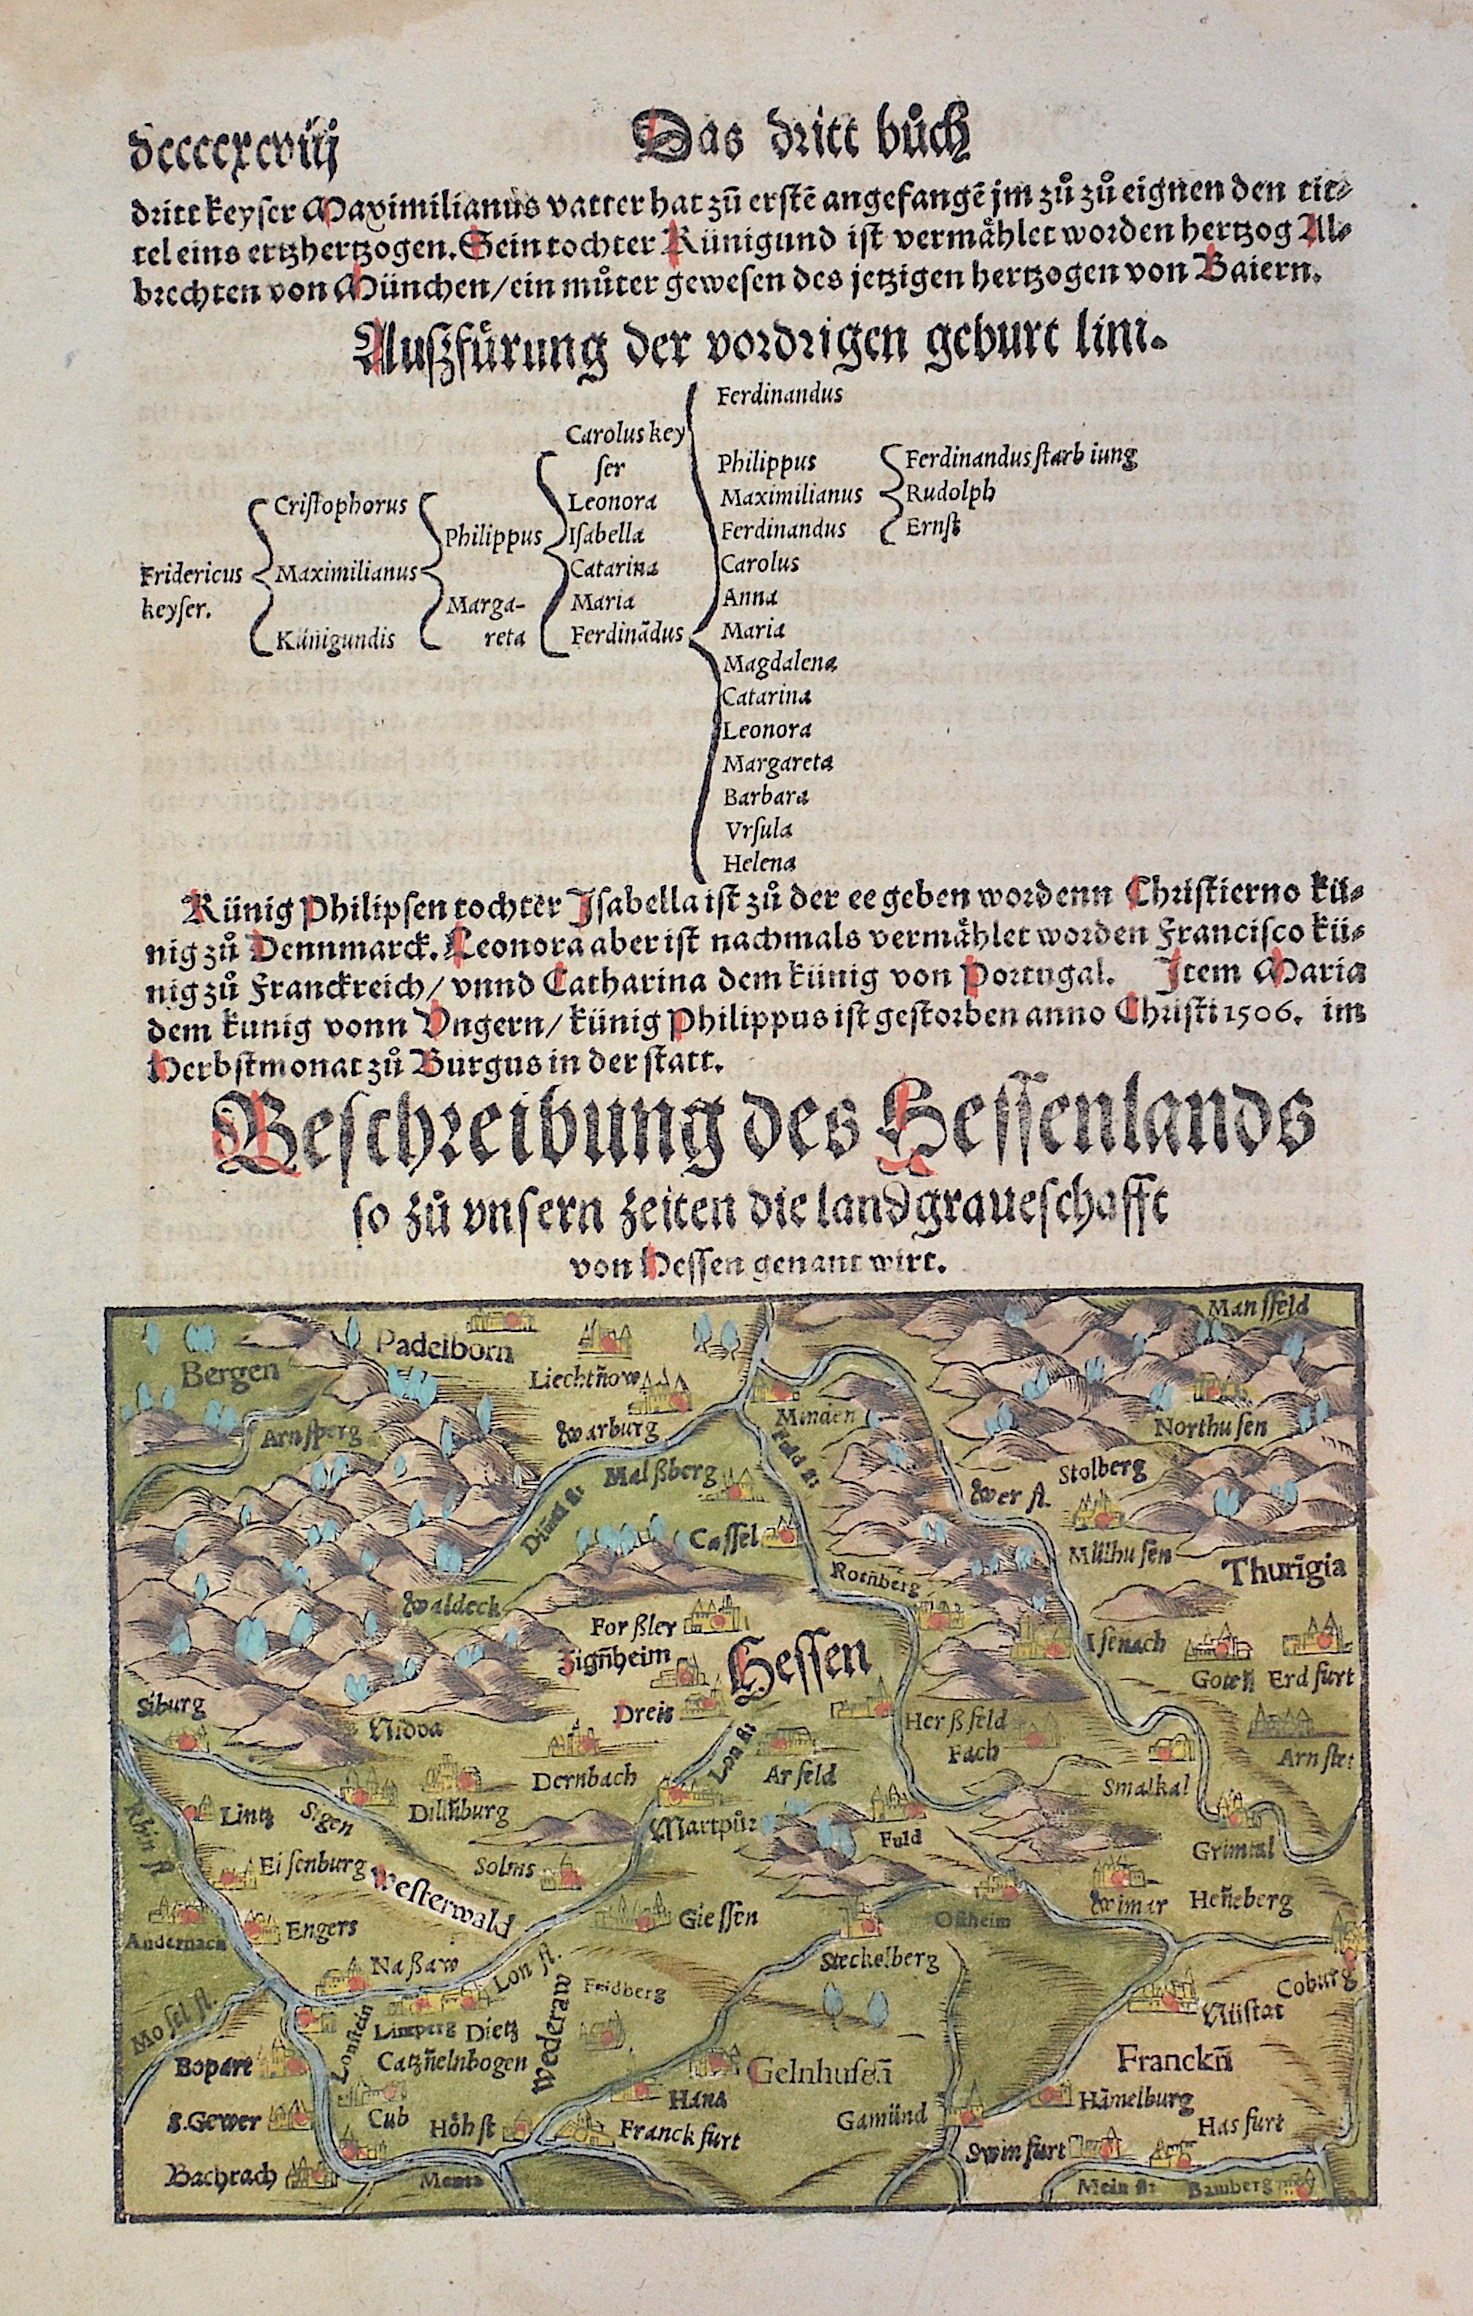 Münster  Bescheibung des Hessenlands so zu unsern Zeiten die Landgraueschafft von Hessen genant wirt.